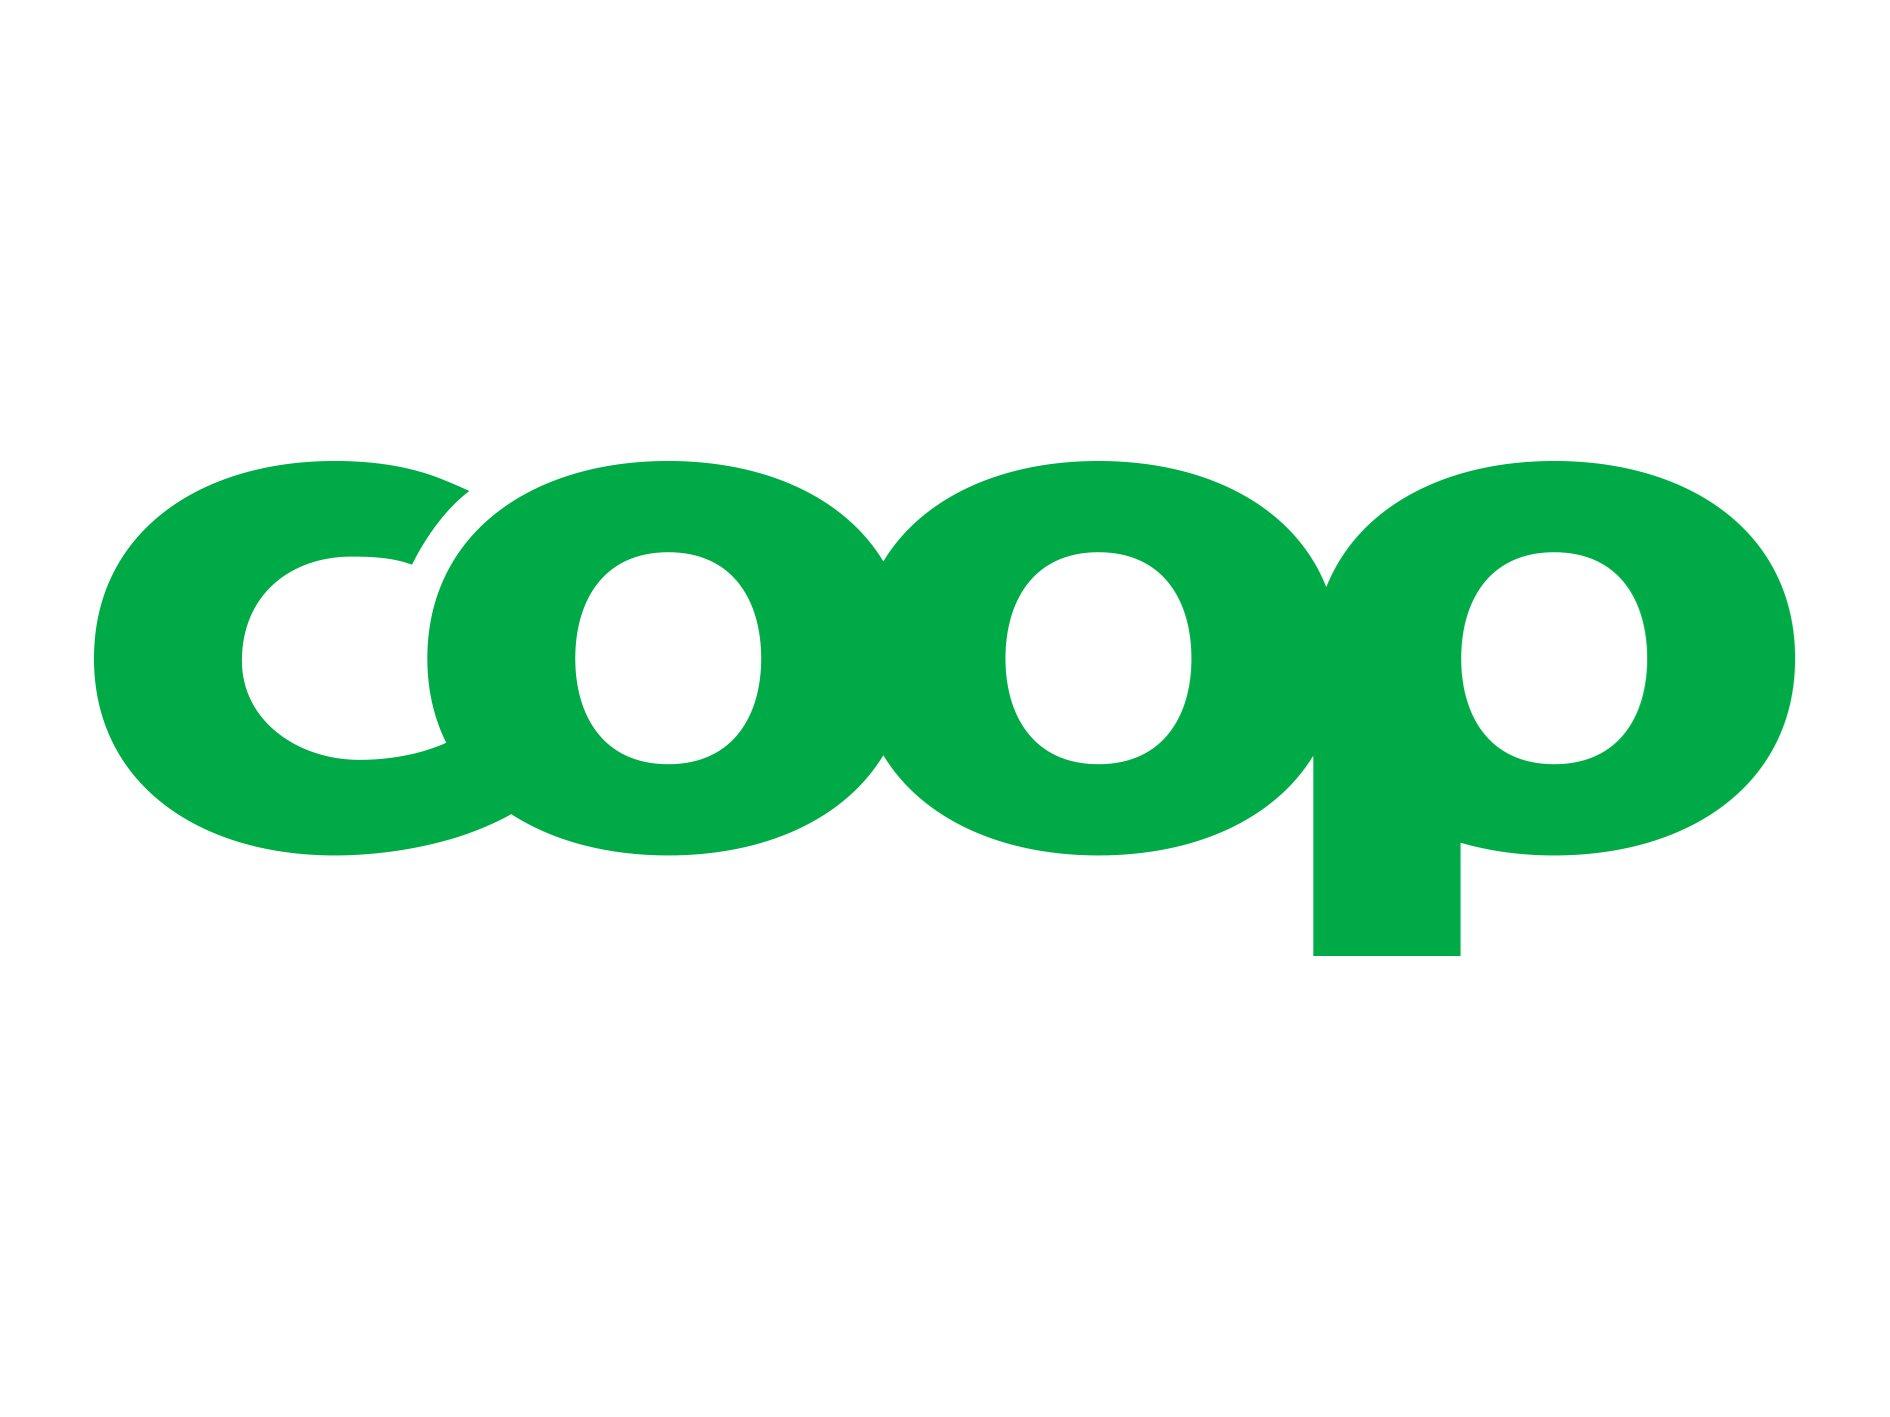 Logo of Coop